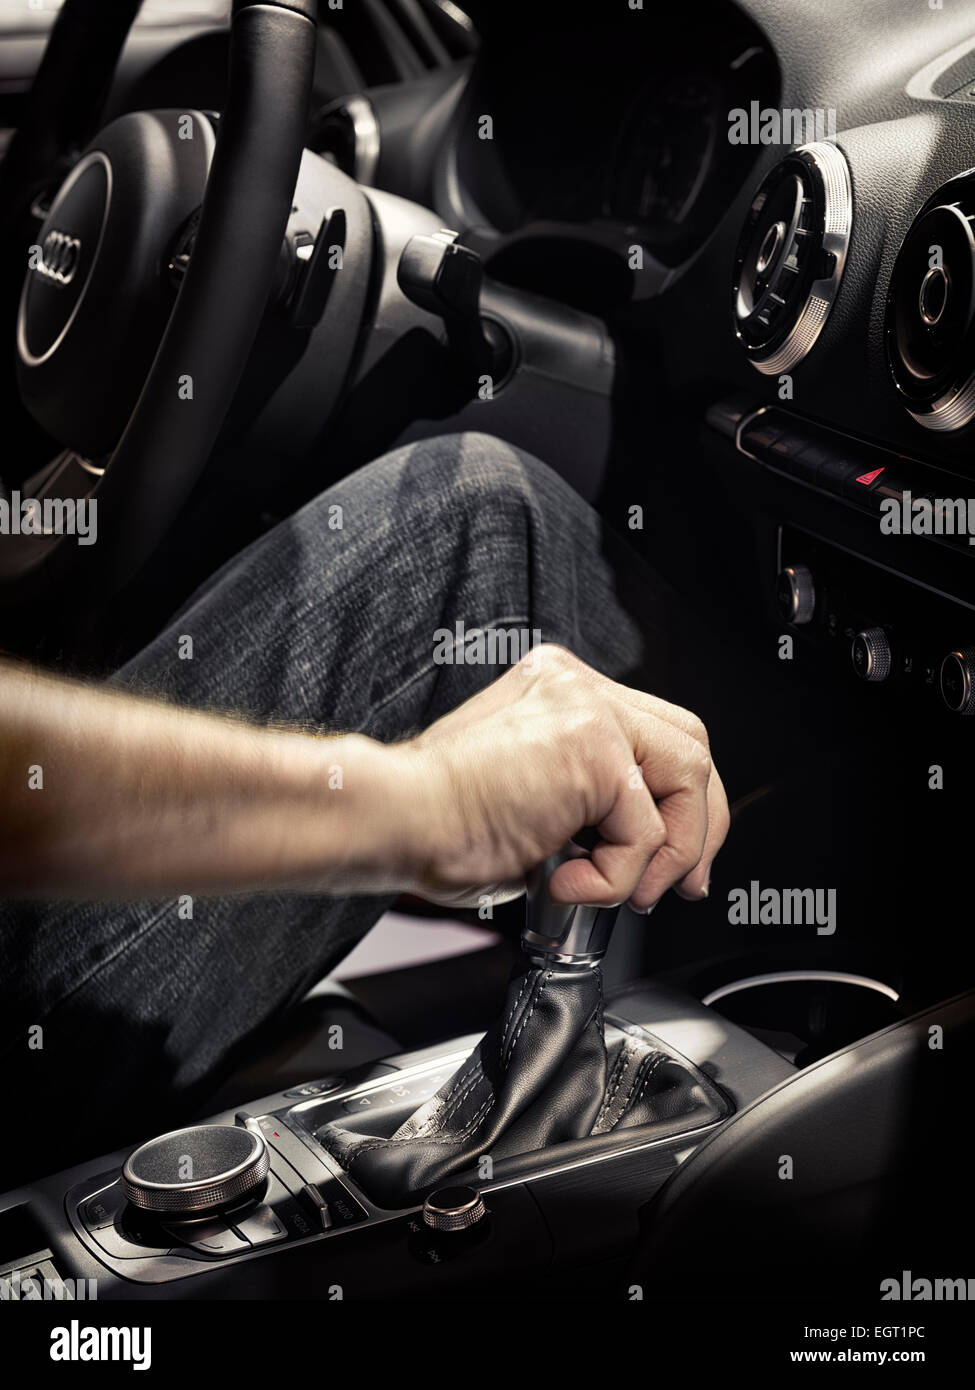 Permis disponible sur MaximImages.com - gros plan d'un homme conduisant une voiture avec sa main sur un levier de vitesses Banque D'Images